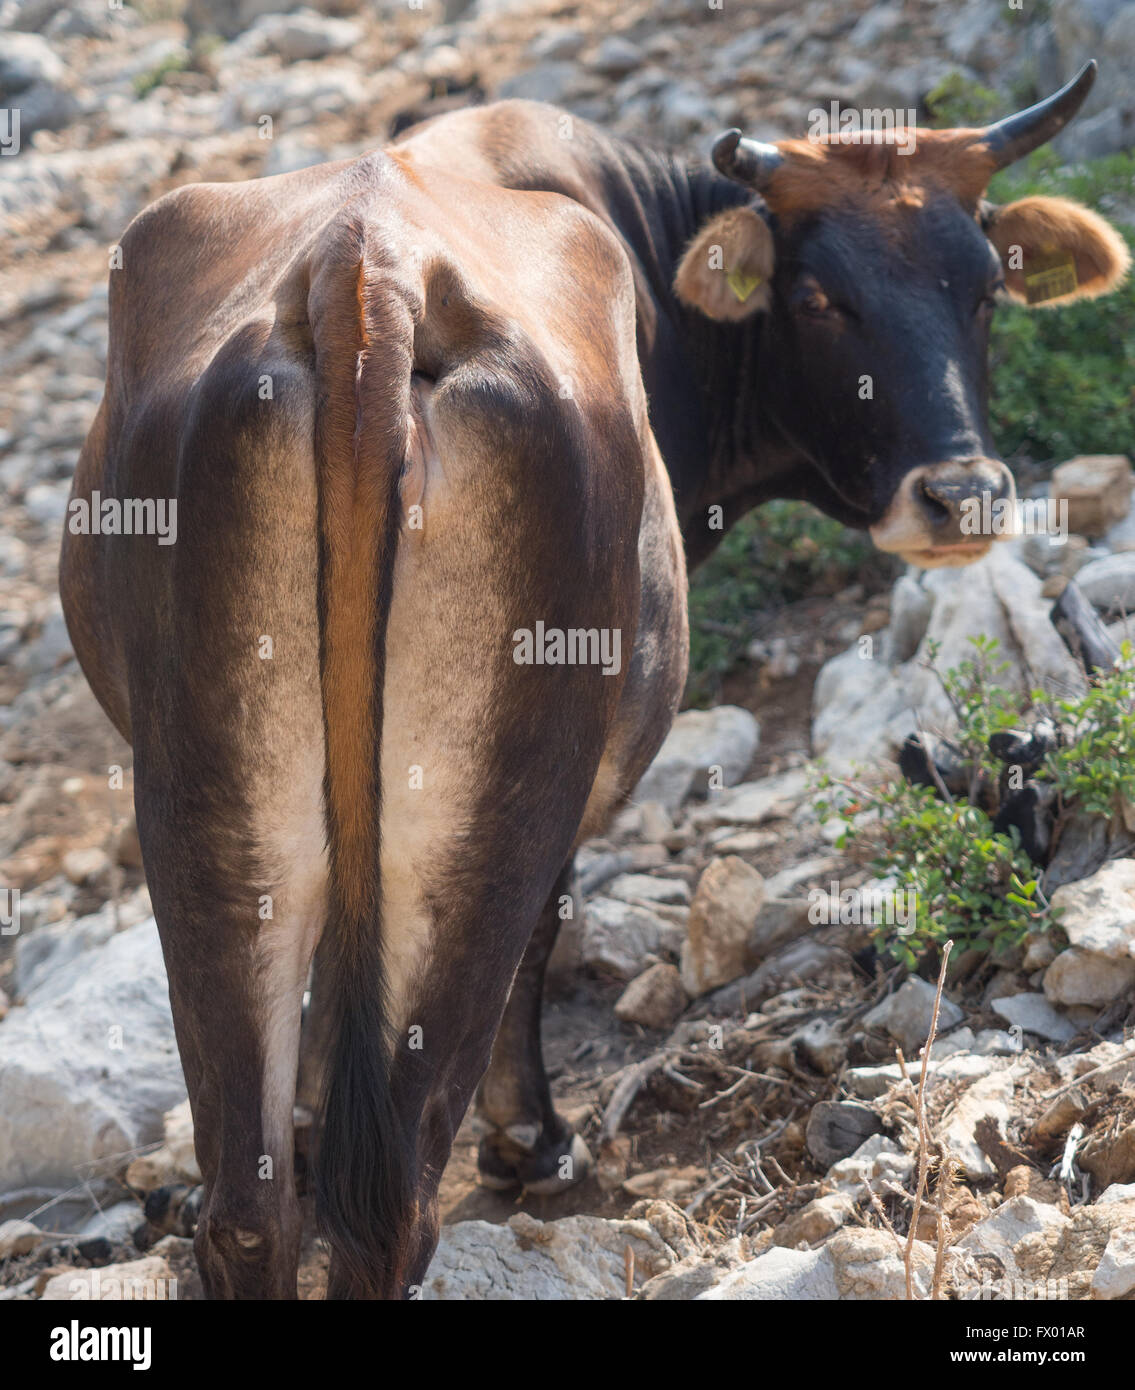 Una vaca nalgas abajo desde atrás mirando a la cámara Foto de stock